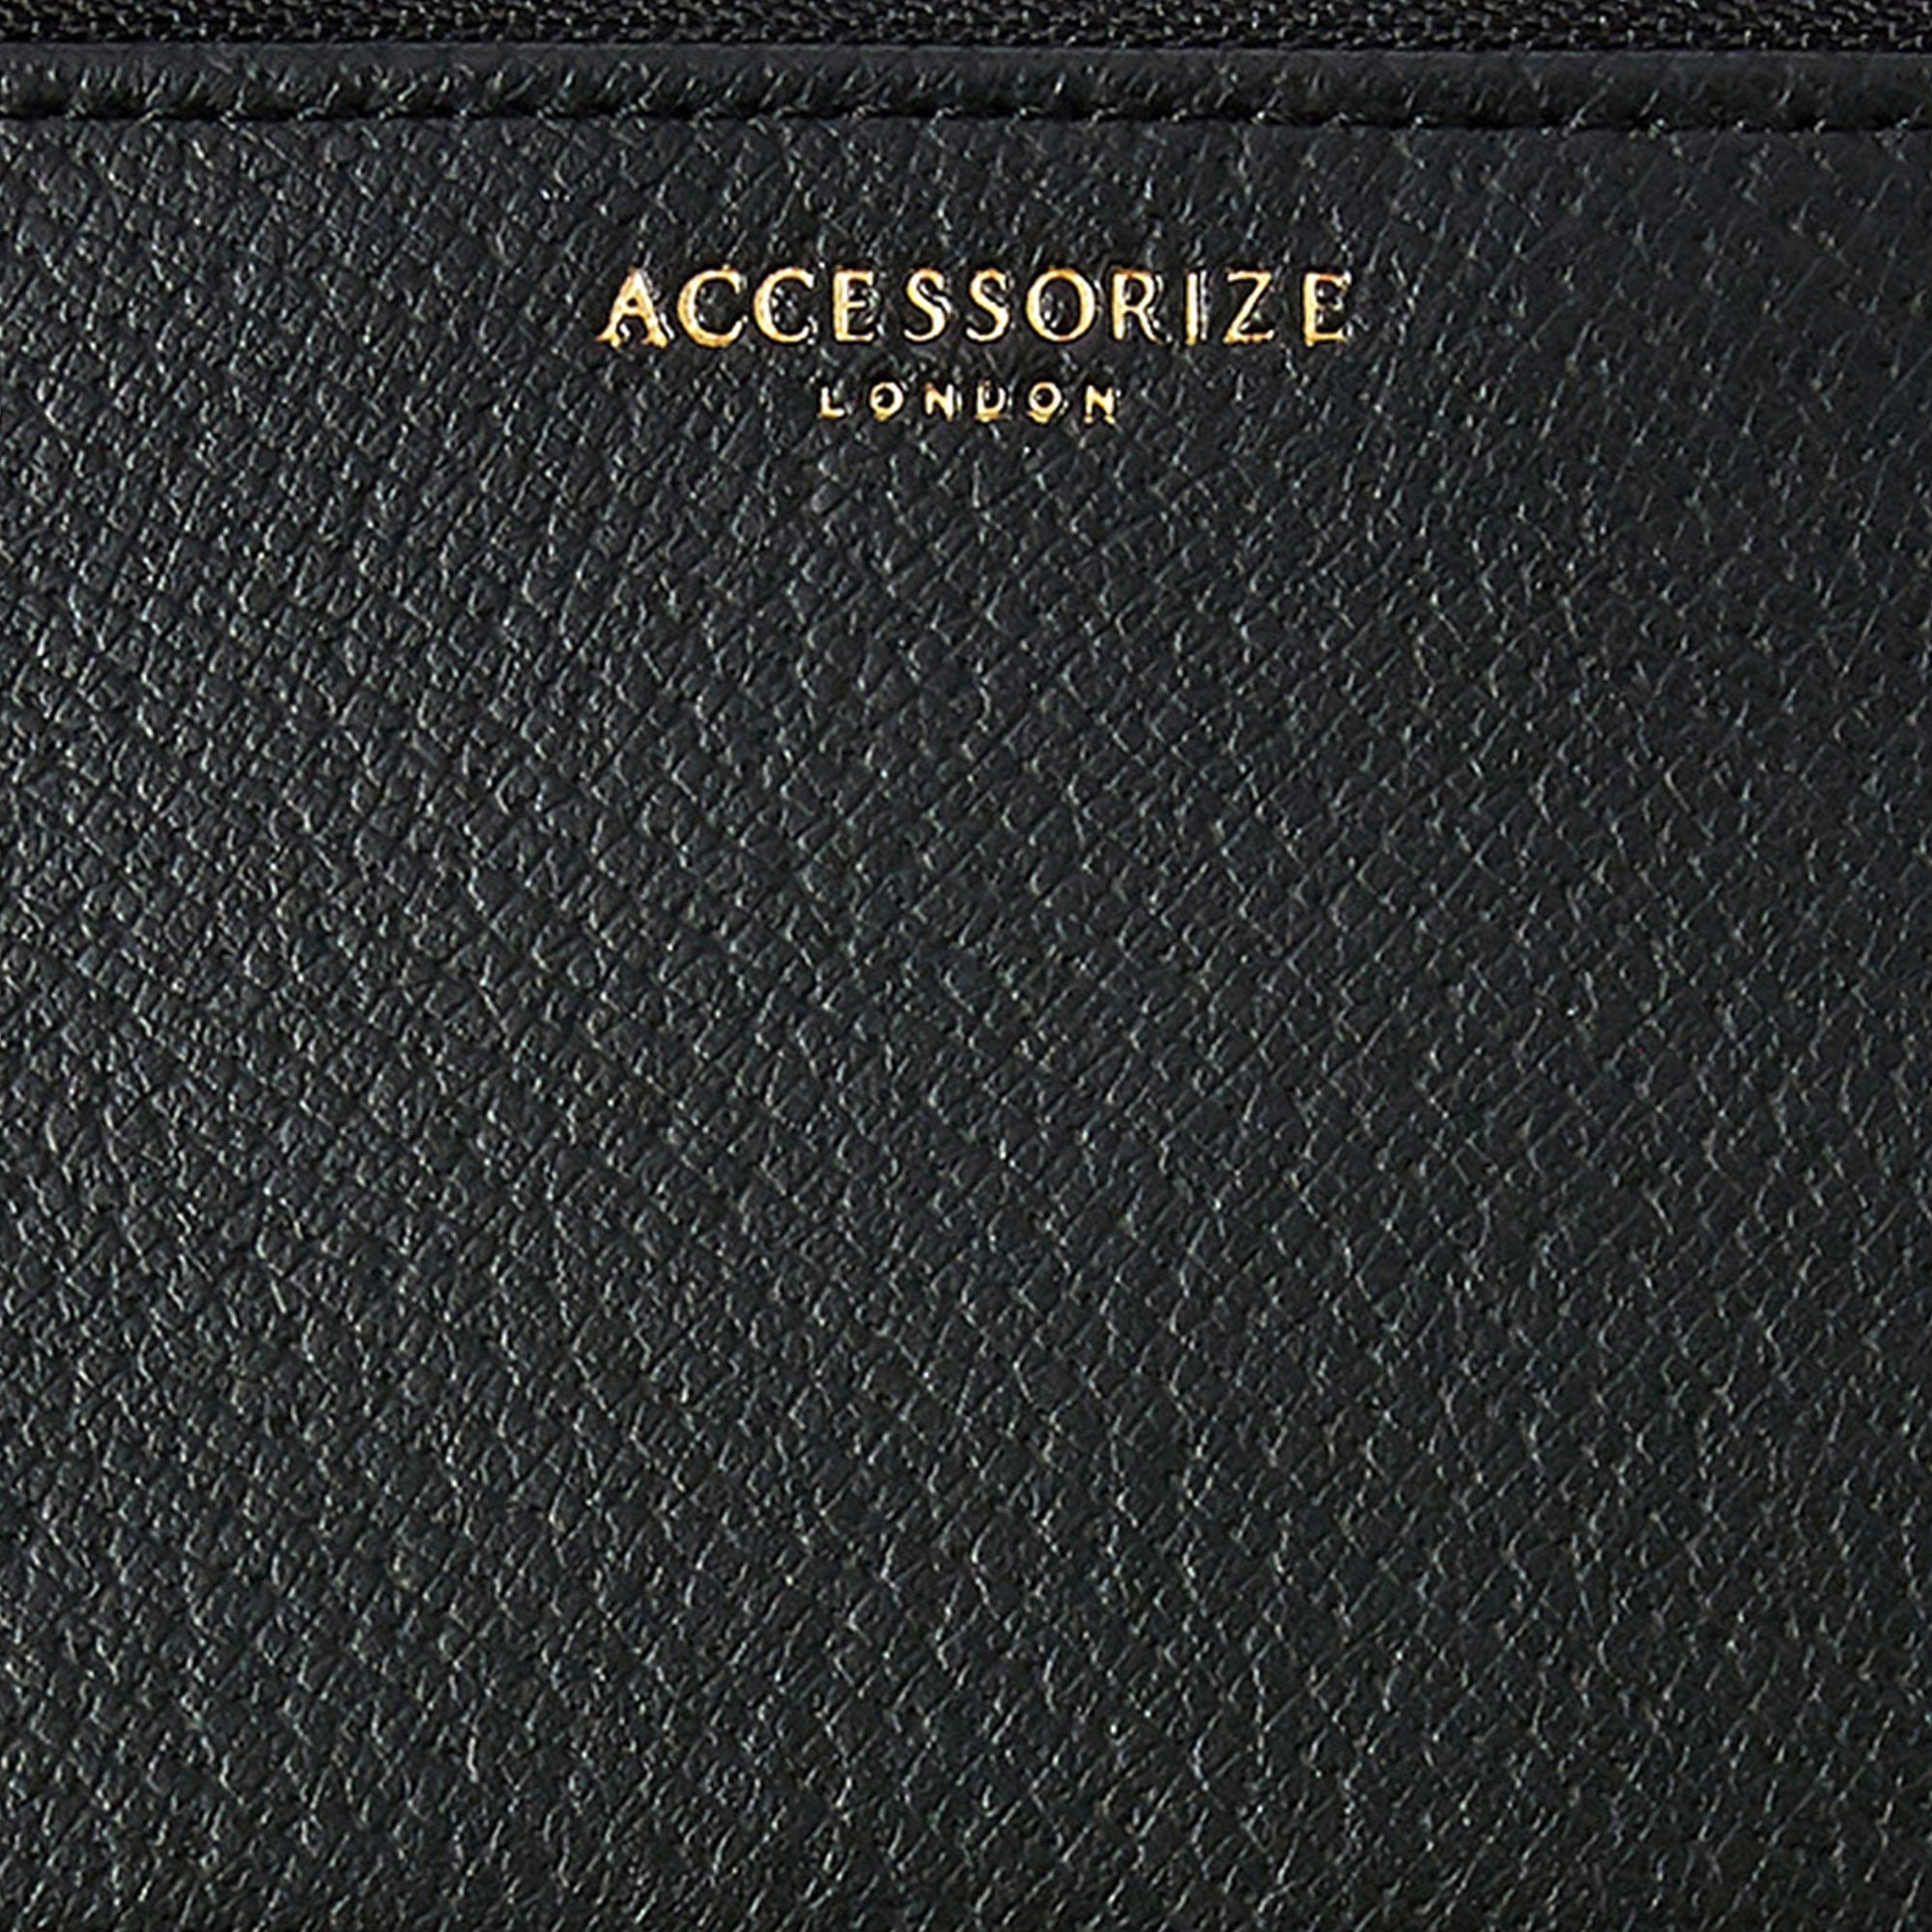 Accessorize London Women's Faux Leather Black Plain Card Holder